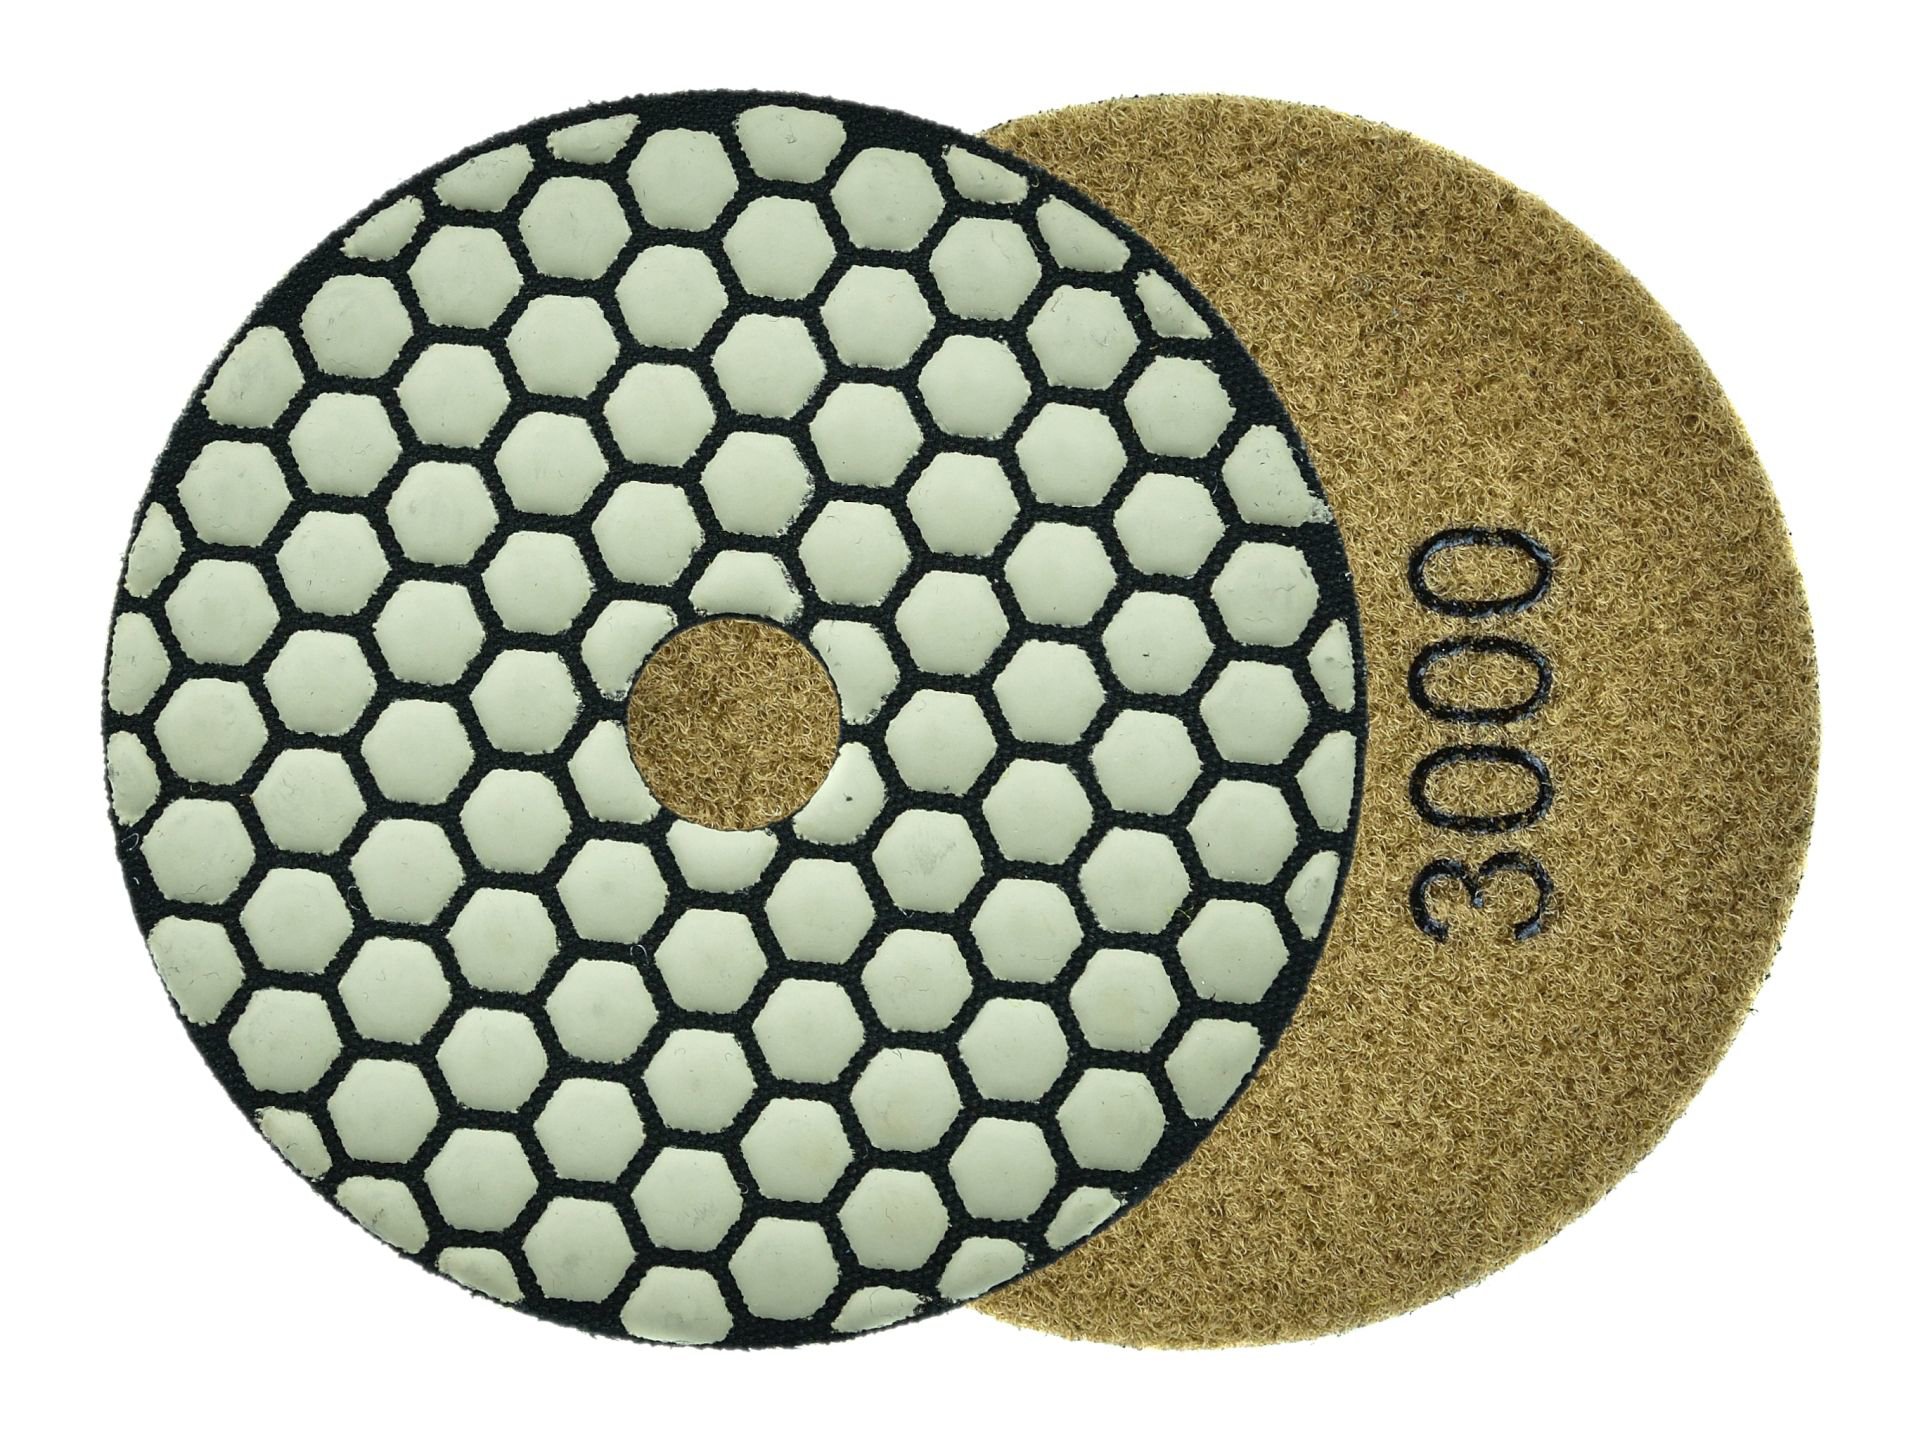 Disc pentru slefuirea uscata a gresiei, 100 mm, granulatie 3000, Geko G78936